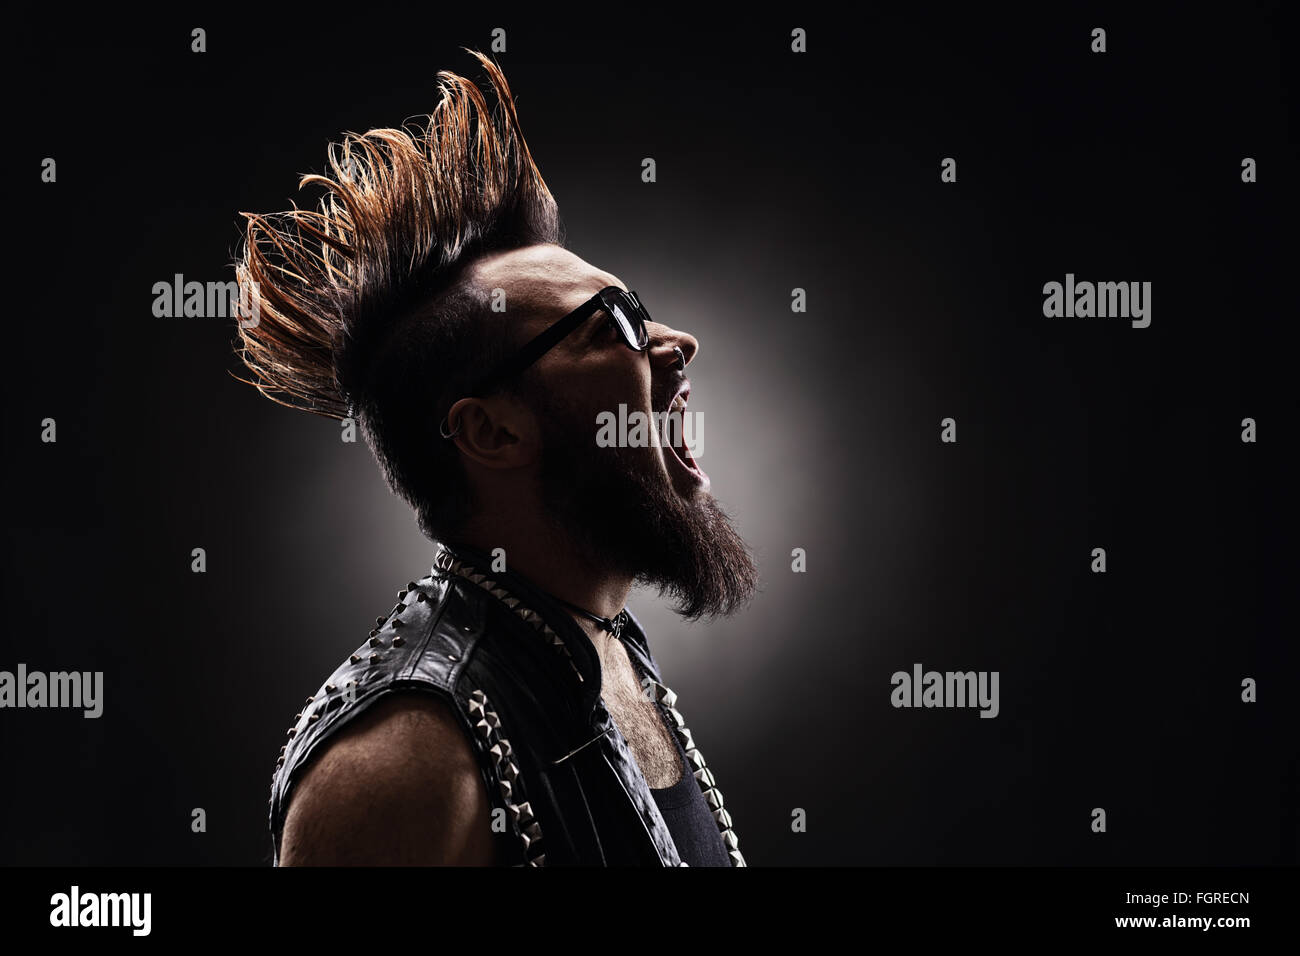 Foto de perfil de un rockero punk furiosa gritando sobre fondo oscuro Foto de stock